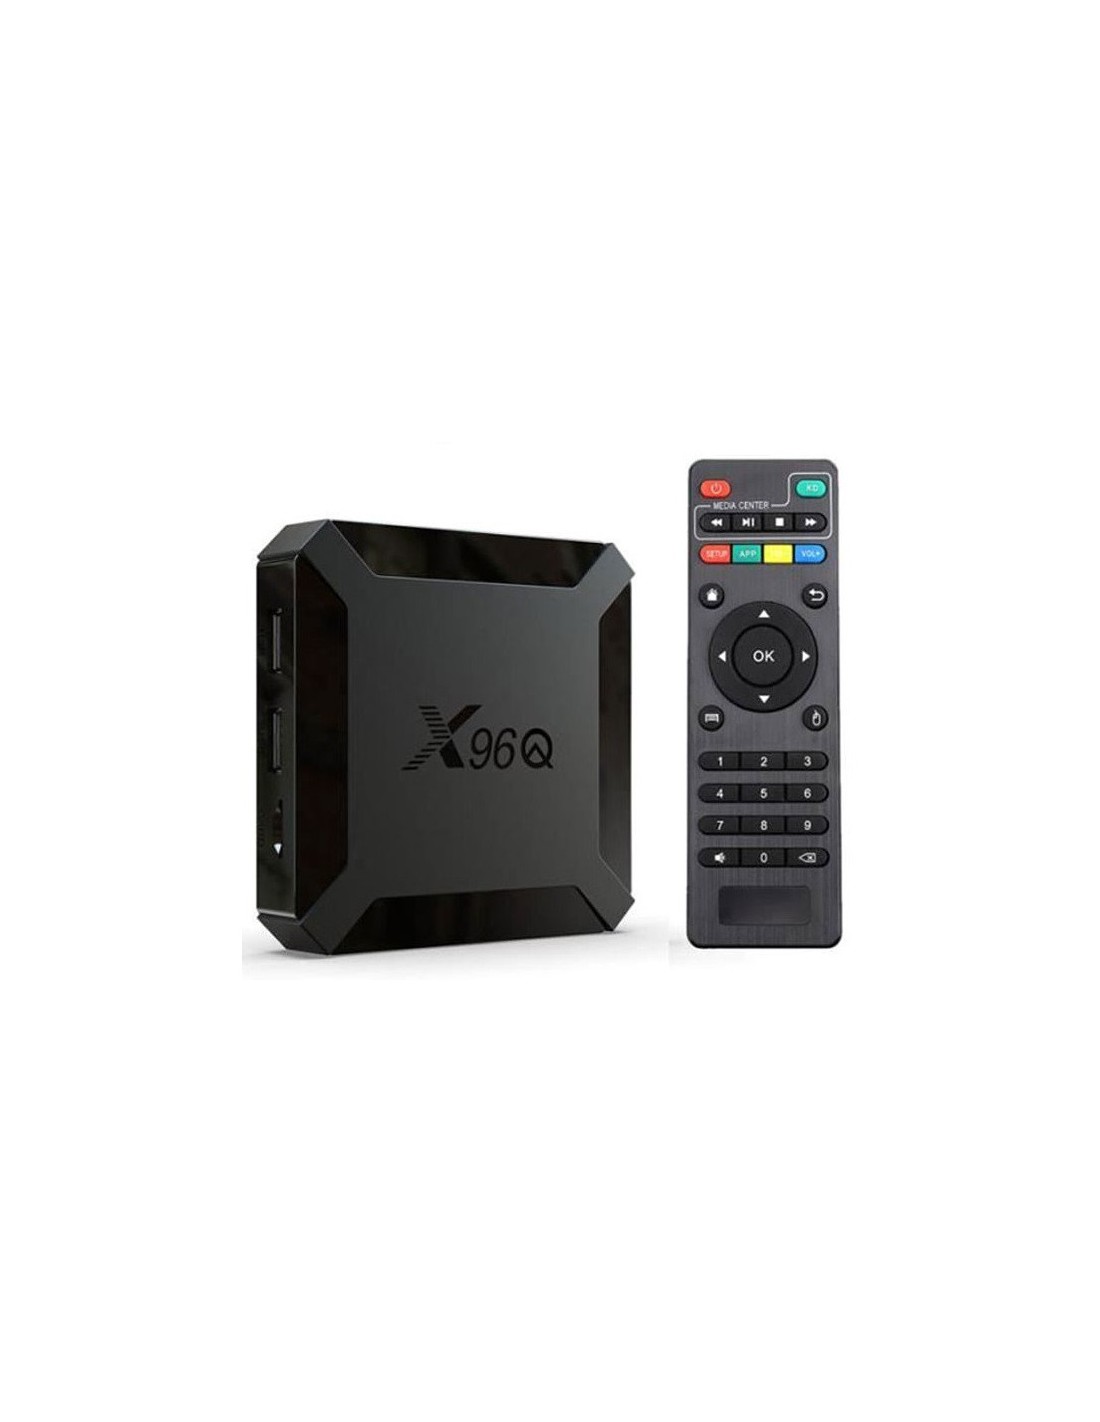 Box TV Android X96 Mini - 2Go RAM - 16Go ROM - (x96-2G)Tunisie